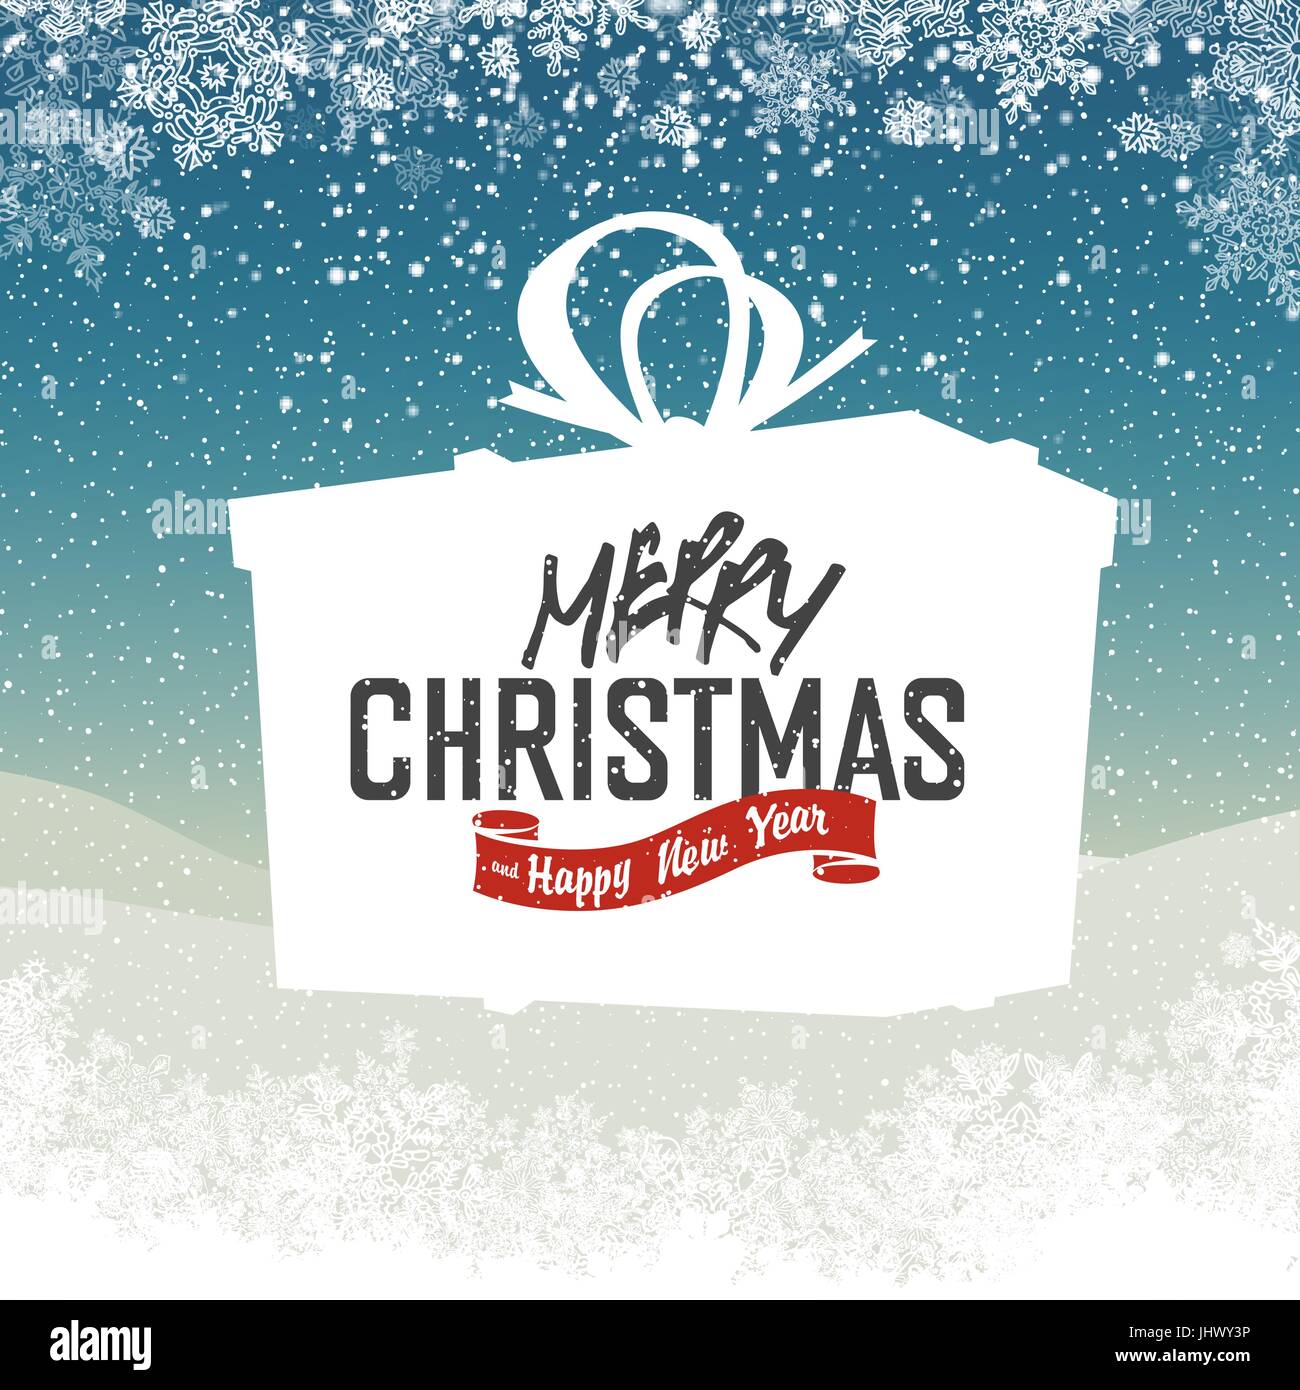 Wir wünschen Ihnen einen sehr frohe Weihnachten und Happy New Year-Schriftzug in Kastenform Geschenk Weihnachten. Auf einem Hintergrund magische Nacht mit Schneefall und Lichteffekten. Stock Vektor